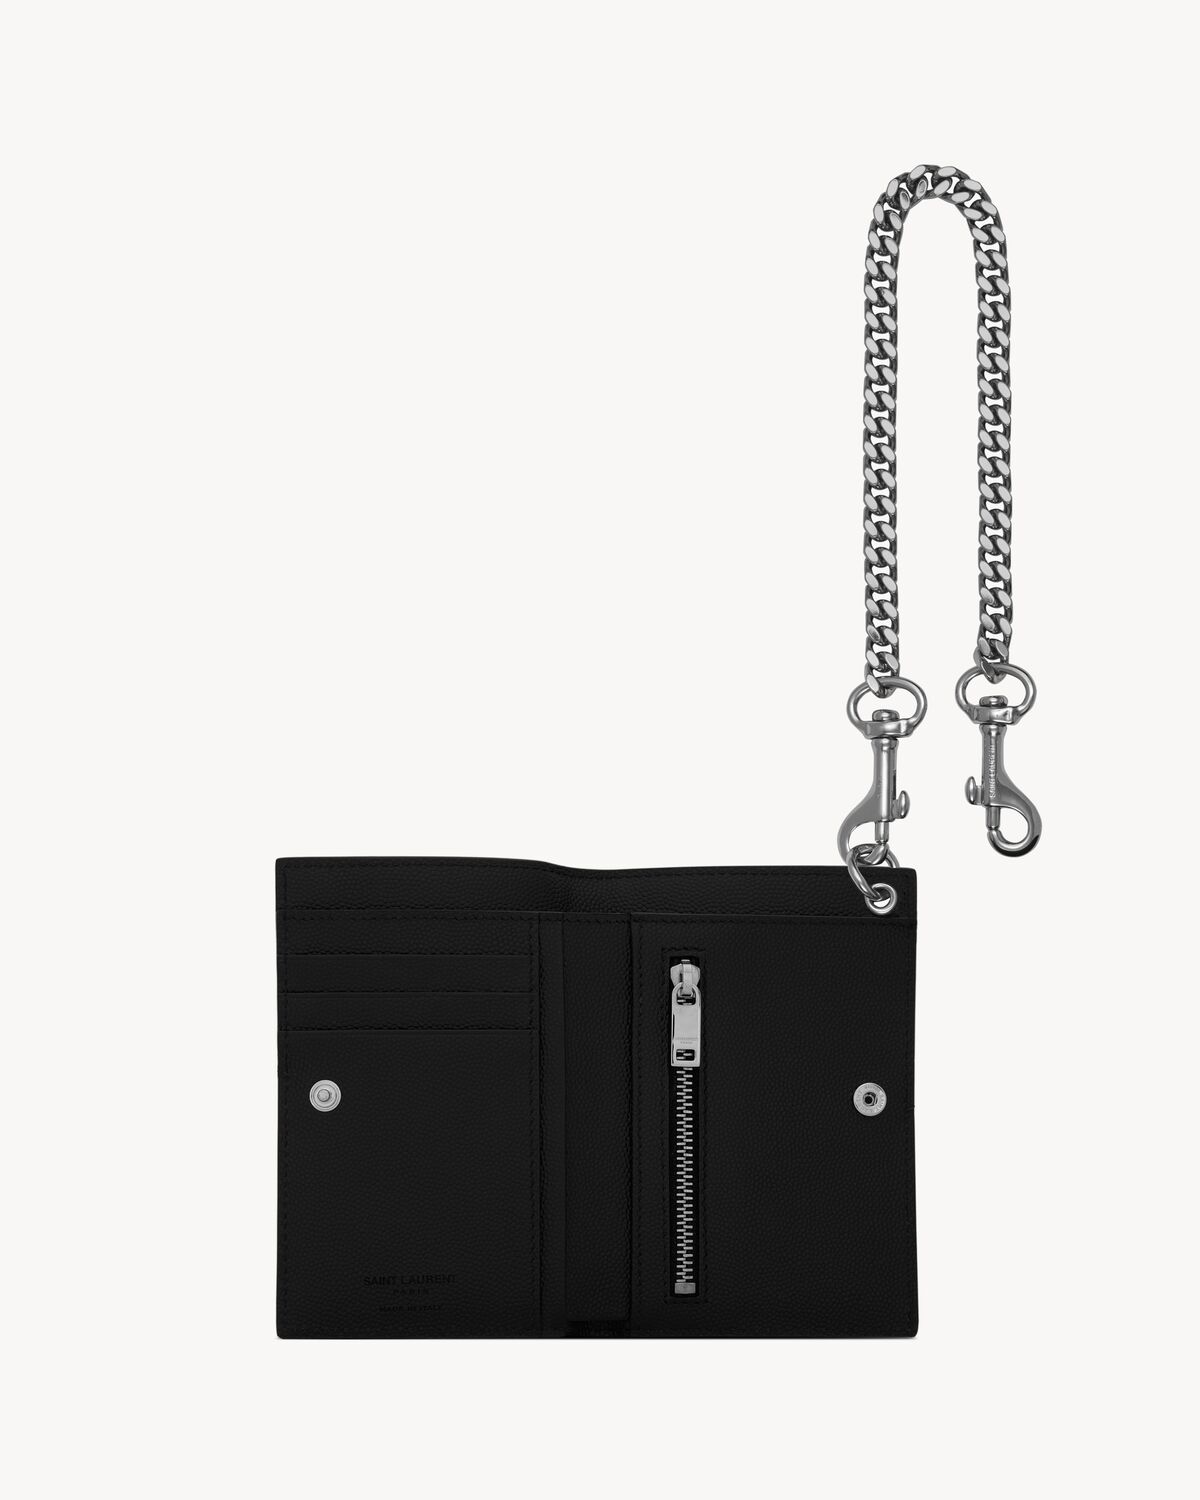 N/S chain wallet in grain de poudre leather